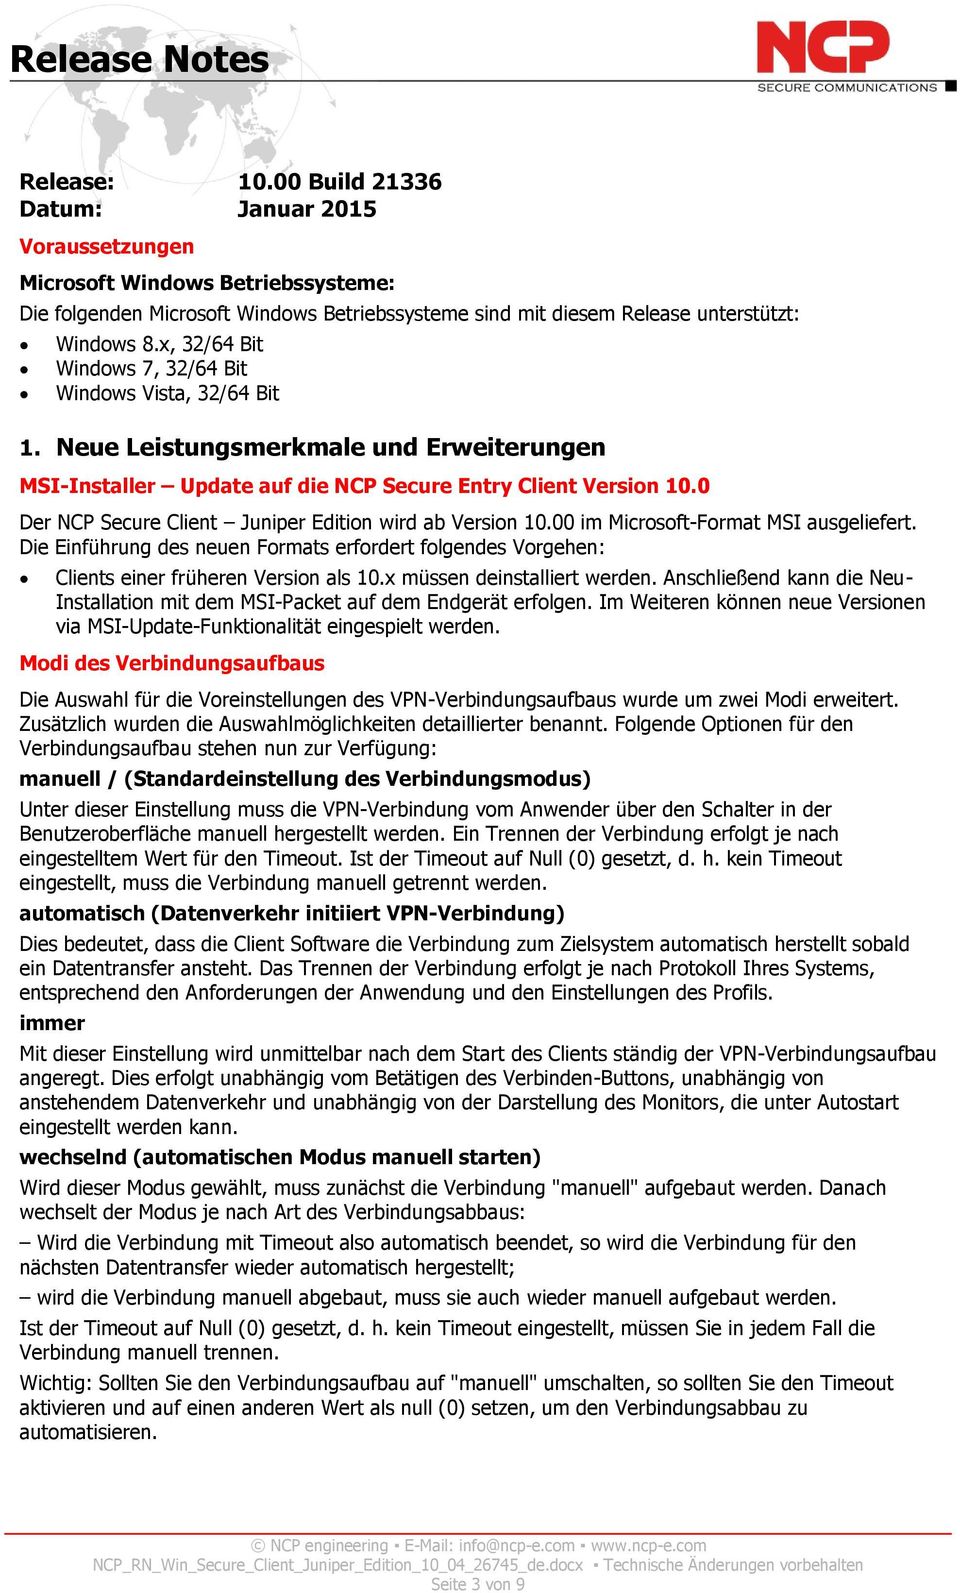 0 Der NCP Secure Client Juniper Edition wird ab Version 10.00 im Microsoft-Format MSI ausgeliefert.